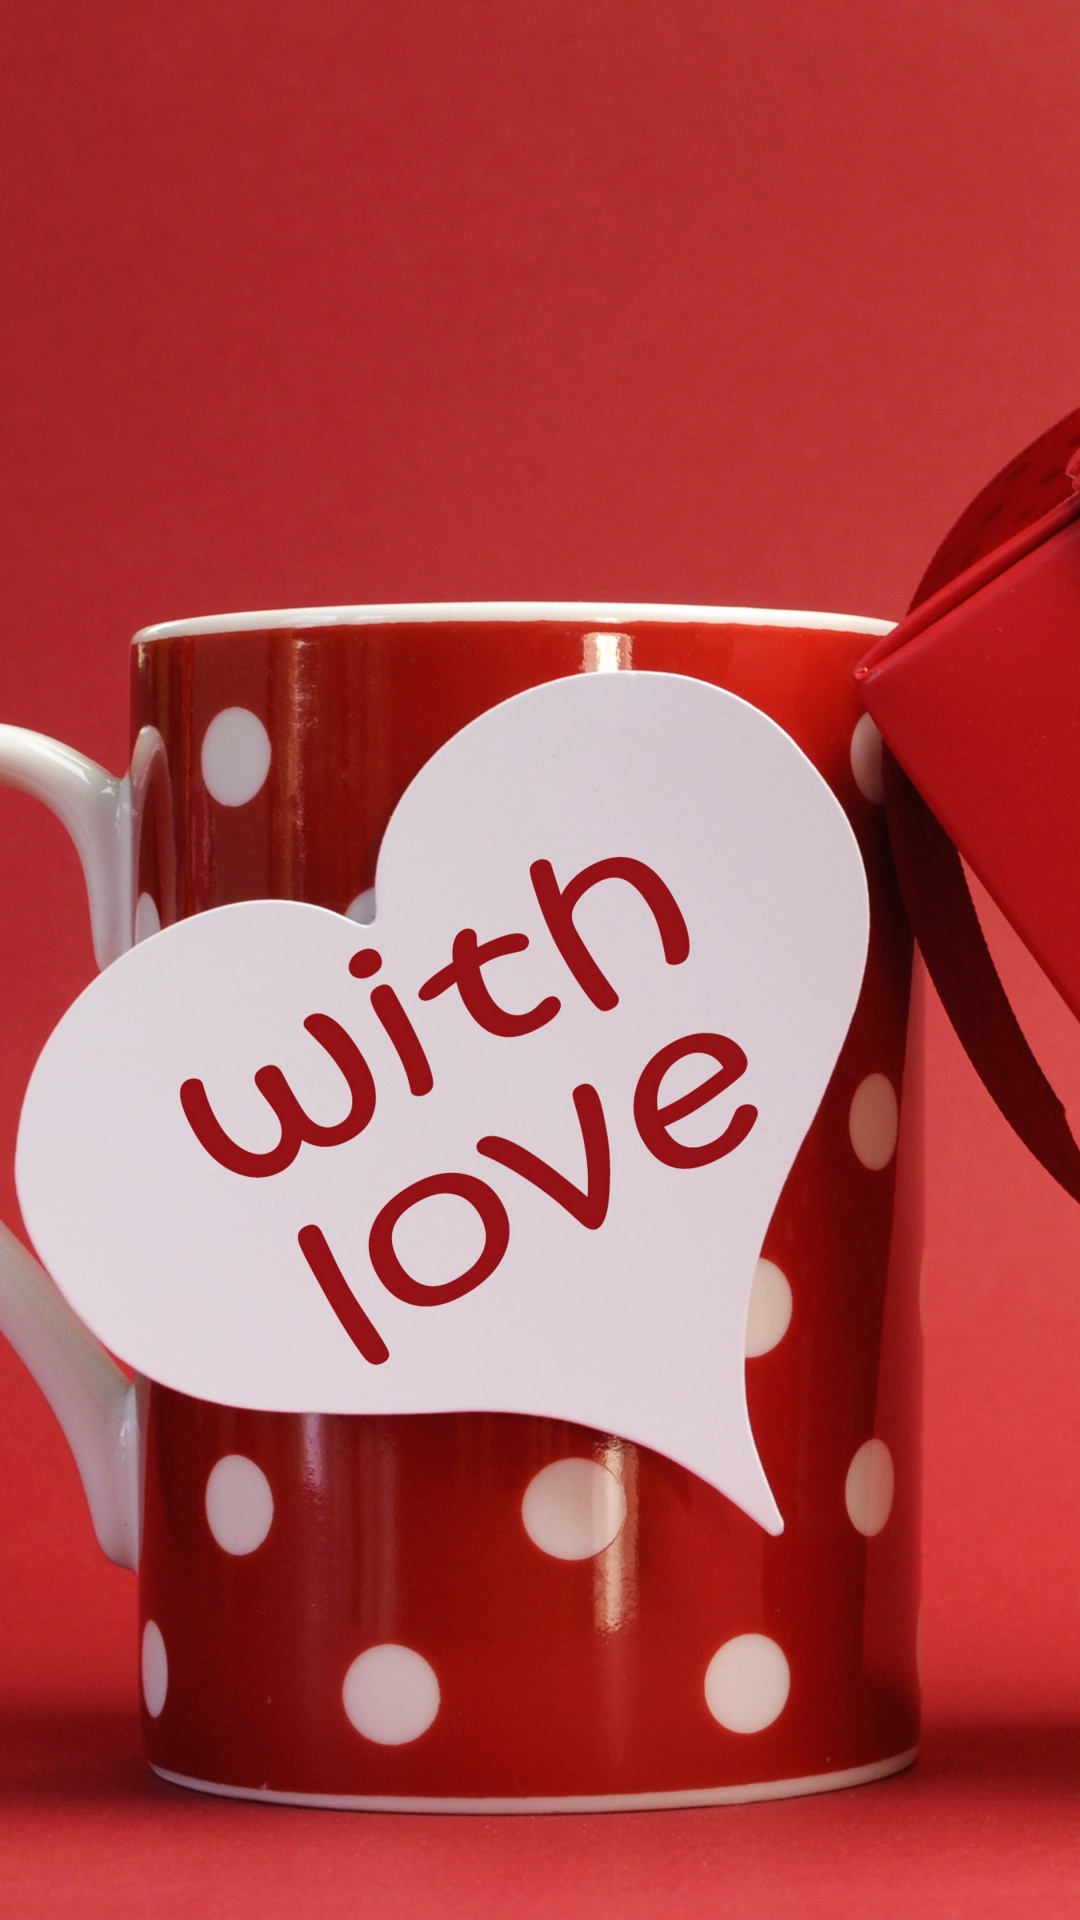 Romantik, Valentines Tag, Herzen, Liebe, Cup. Wallpaper in 1080x1920 Resolution